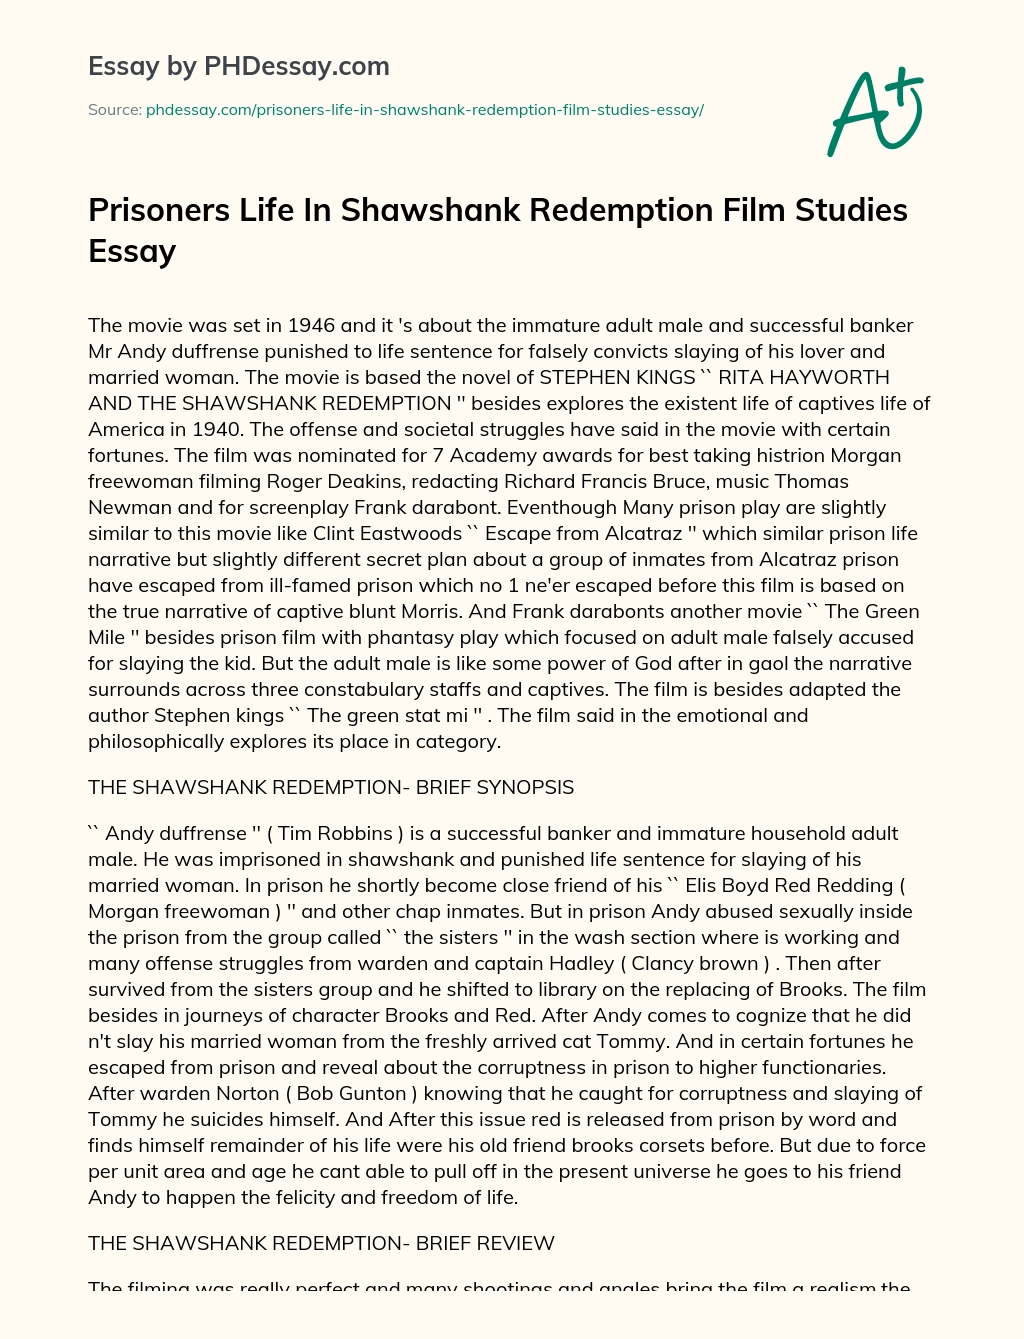 shawshank redemption essay ideas